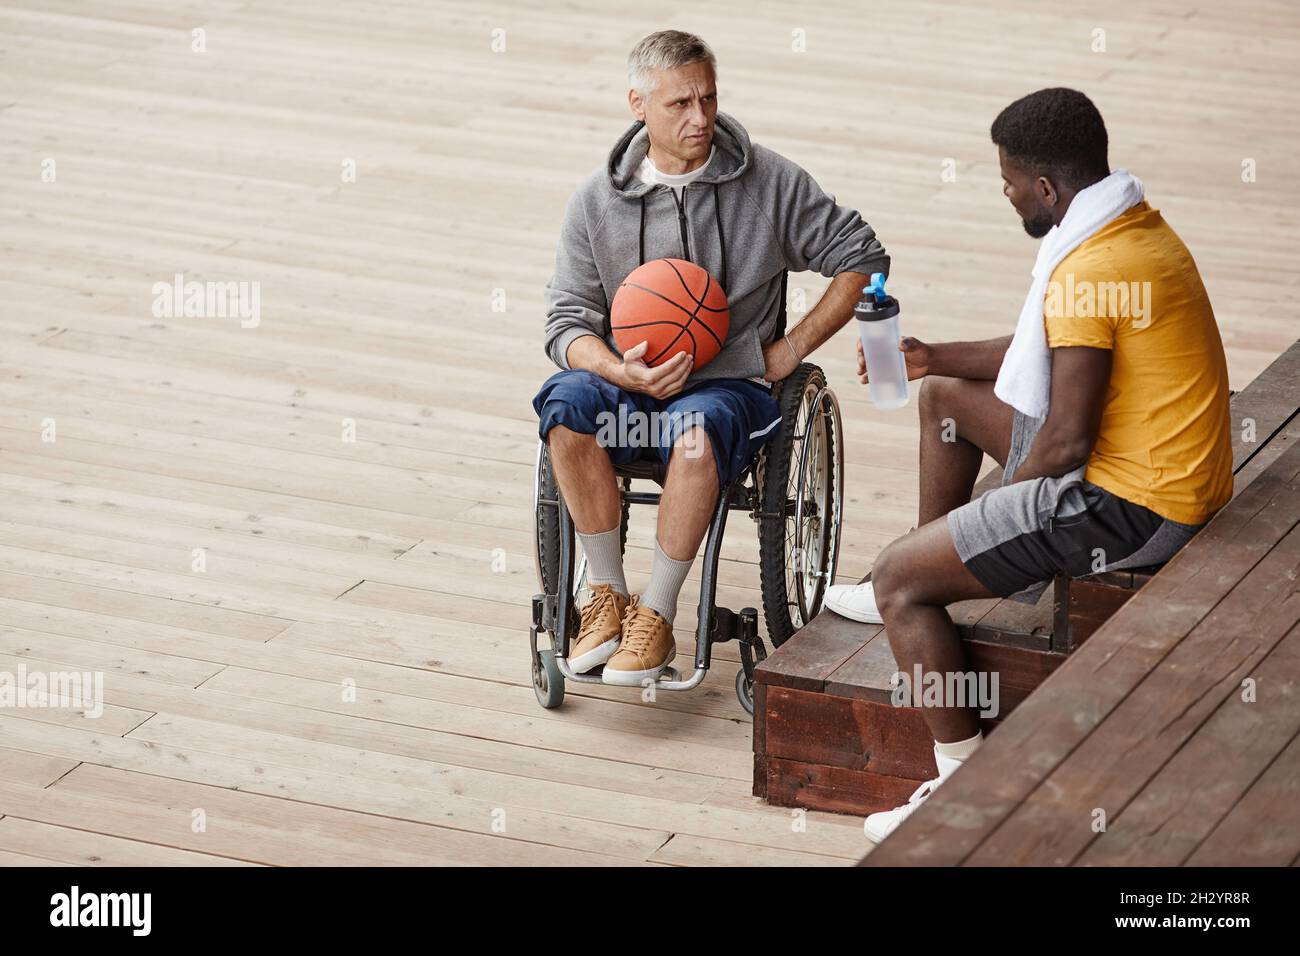 Reifer Mann mit Behinderung sitzt im Rollstuhl mit Ball und spricht mit afrikanischem Athleten über das Spiel Stockfoto